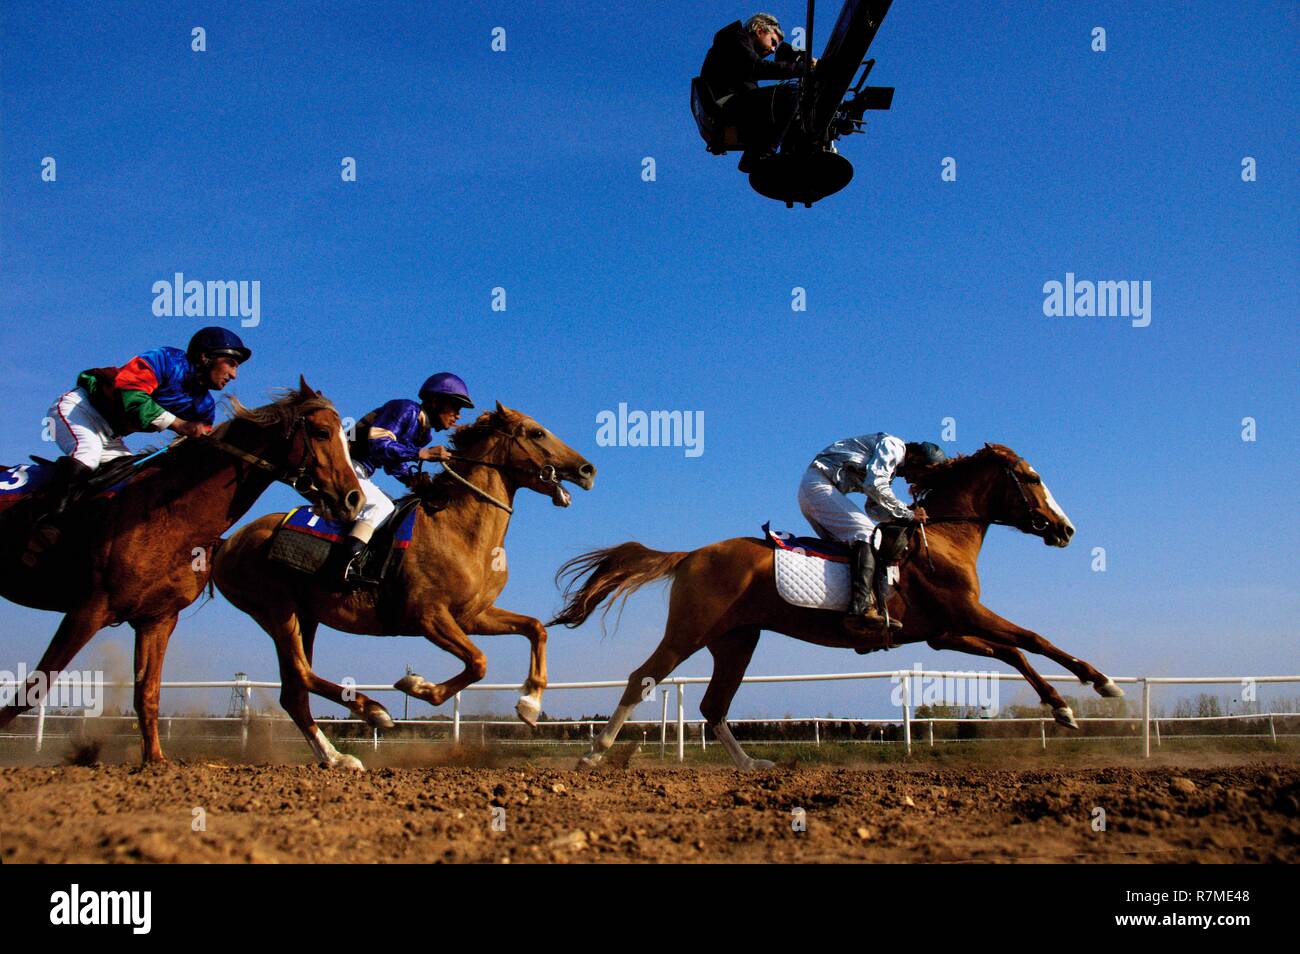 Azerbaijan, Absheron Peninsula, Bine, Hippodrome, men race around the Hippodrome riding Karabakh horses hold culturally very important in Azerbaijan Stock Photo